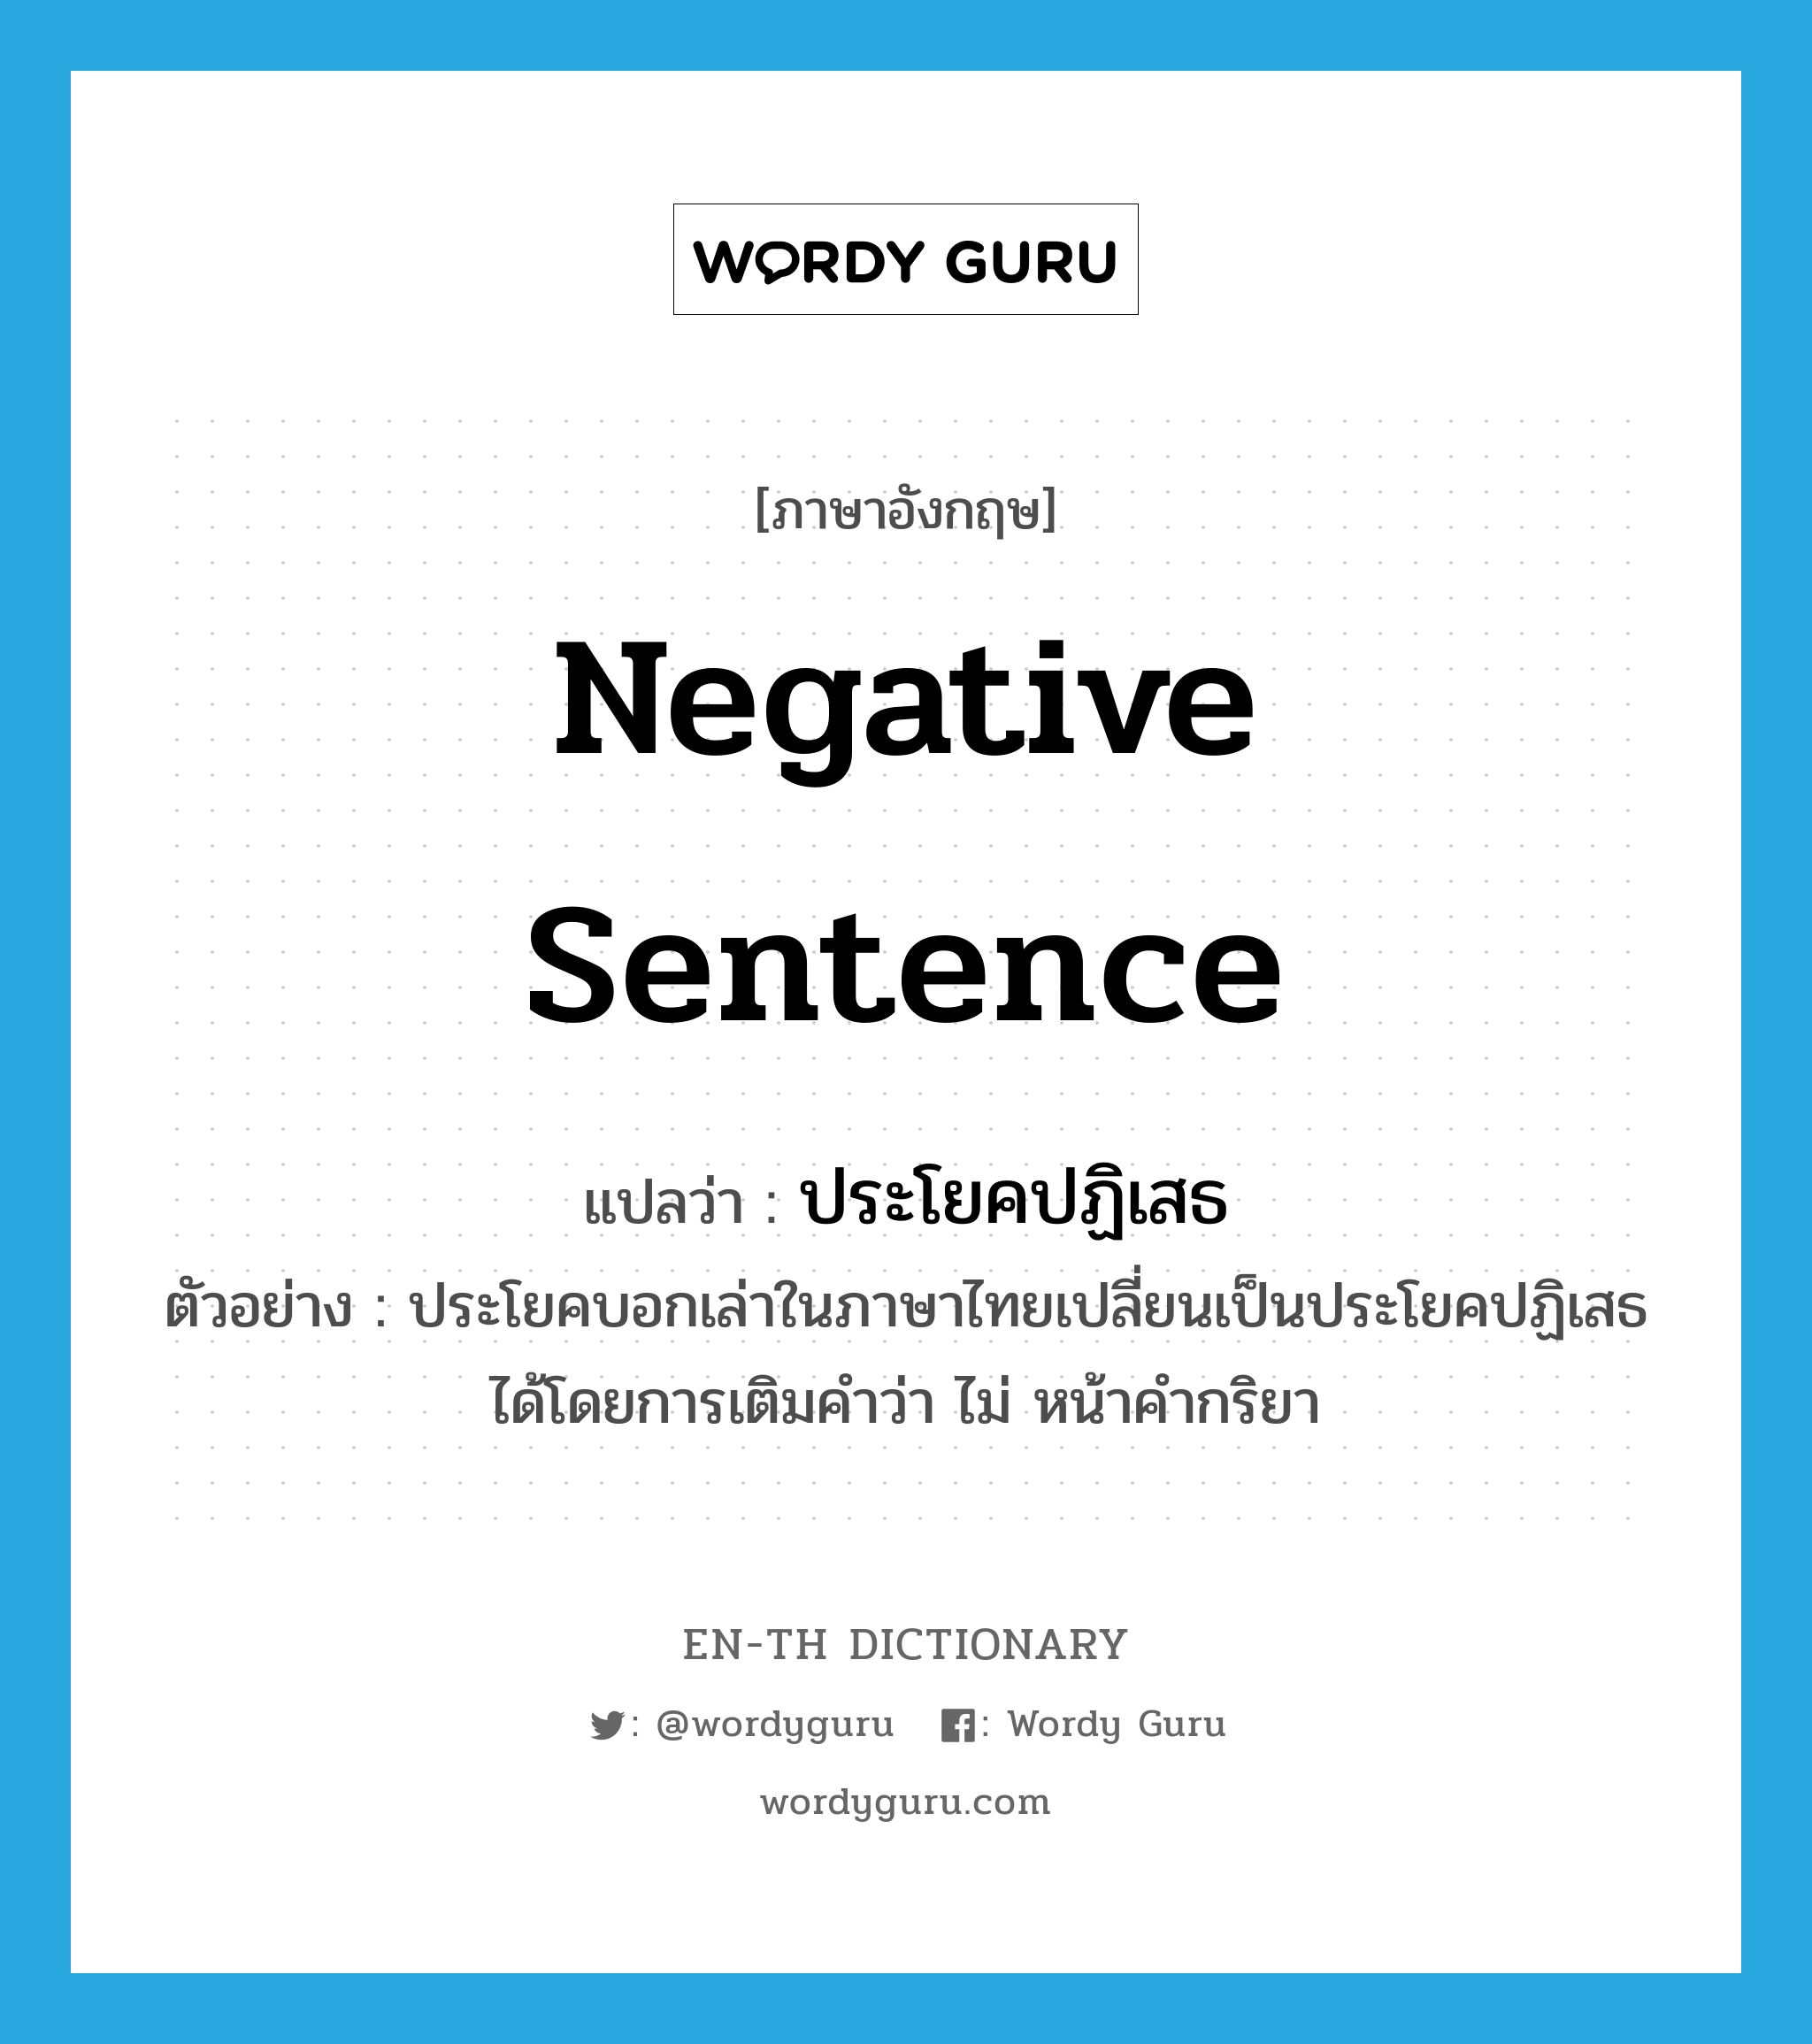 ประโยคปฏิเสธ ภาษาอังกฤษ?, คำศัพท์ภาษาอังกฤษ ประโยคปฏิเสธ แปลว่า negative sentence ประเภท N ตัวอย่าง ประโยคบอกเล่าในภาษาไทยเปลี่ยนเป็นประโยคปฏิเสธได้โดยการเติมคำว่า ไม่ หน้าคำกริยา หมวด N